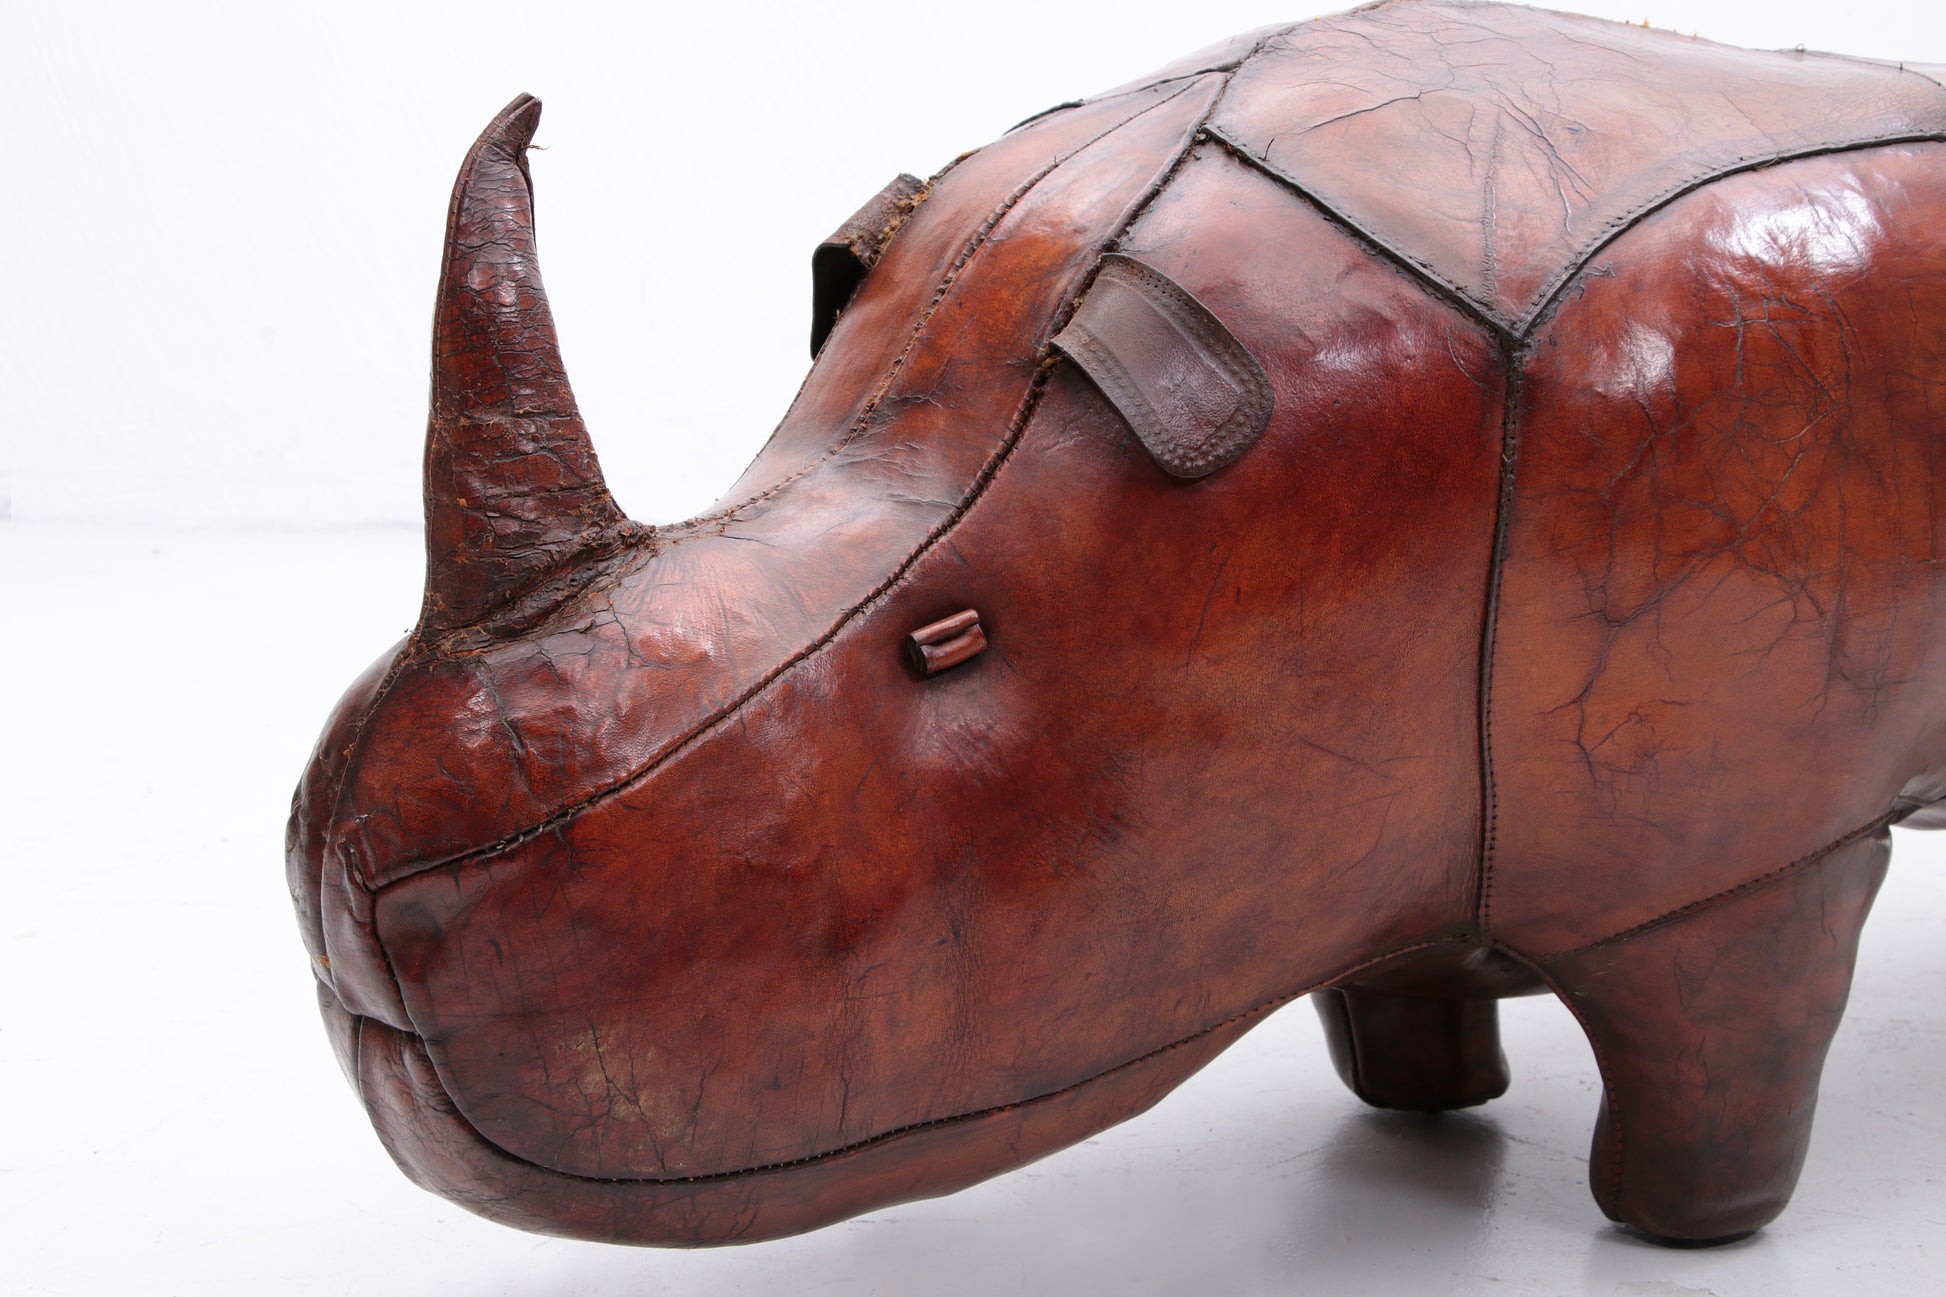 Dimitri Omersa voetenbankje Model neushoorn gemaakt door Abercrombie&Fitch,1960